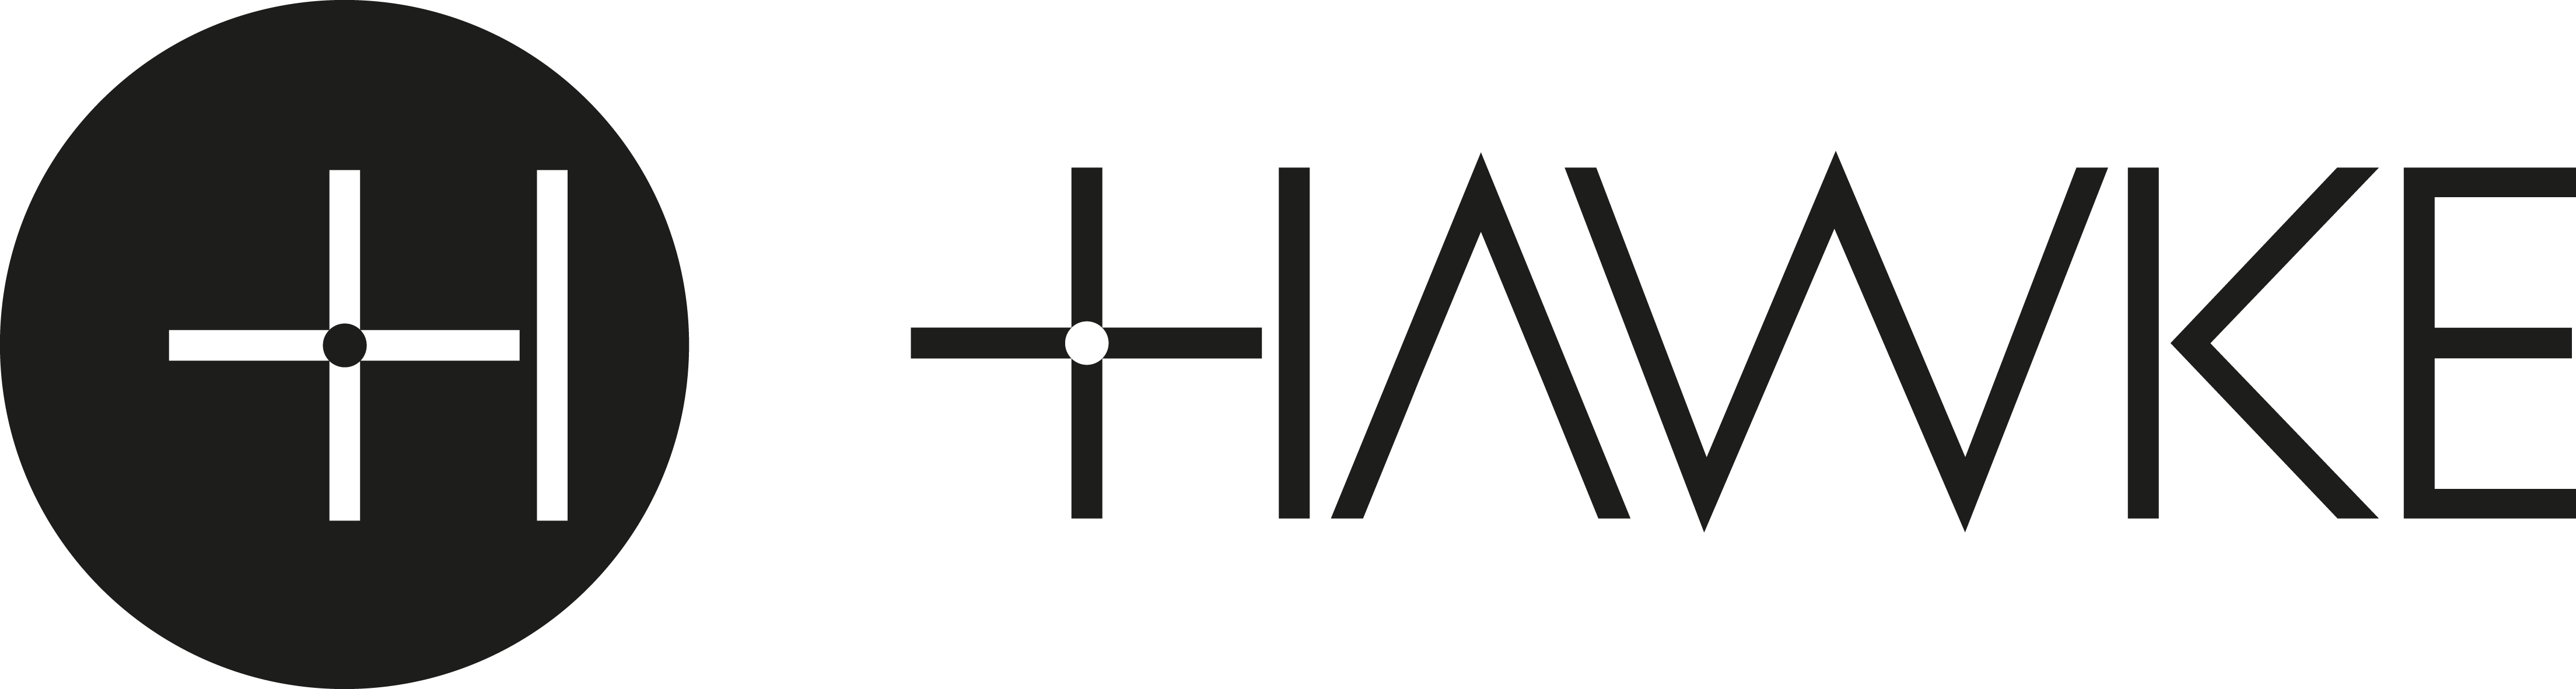 Hawke Logo - Black